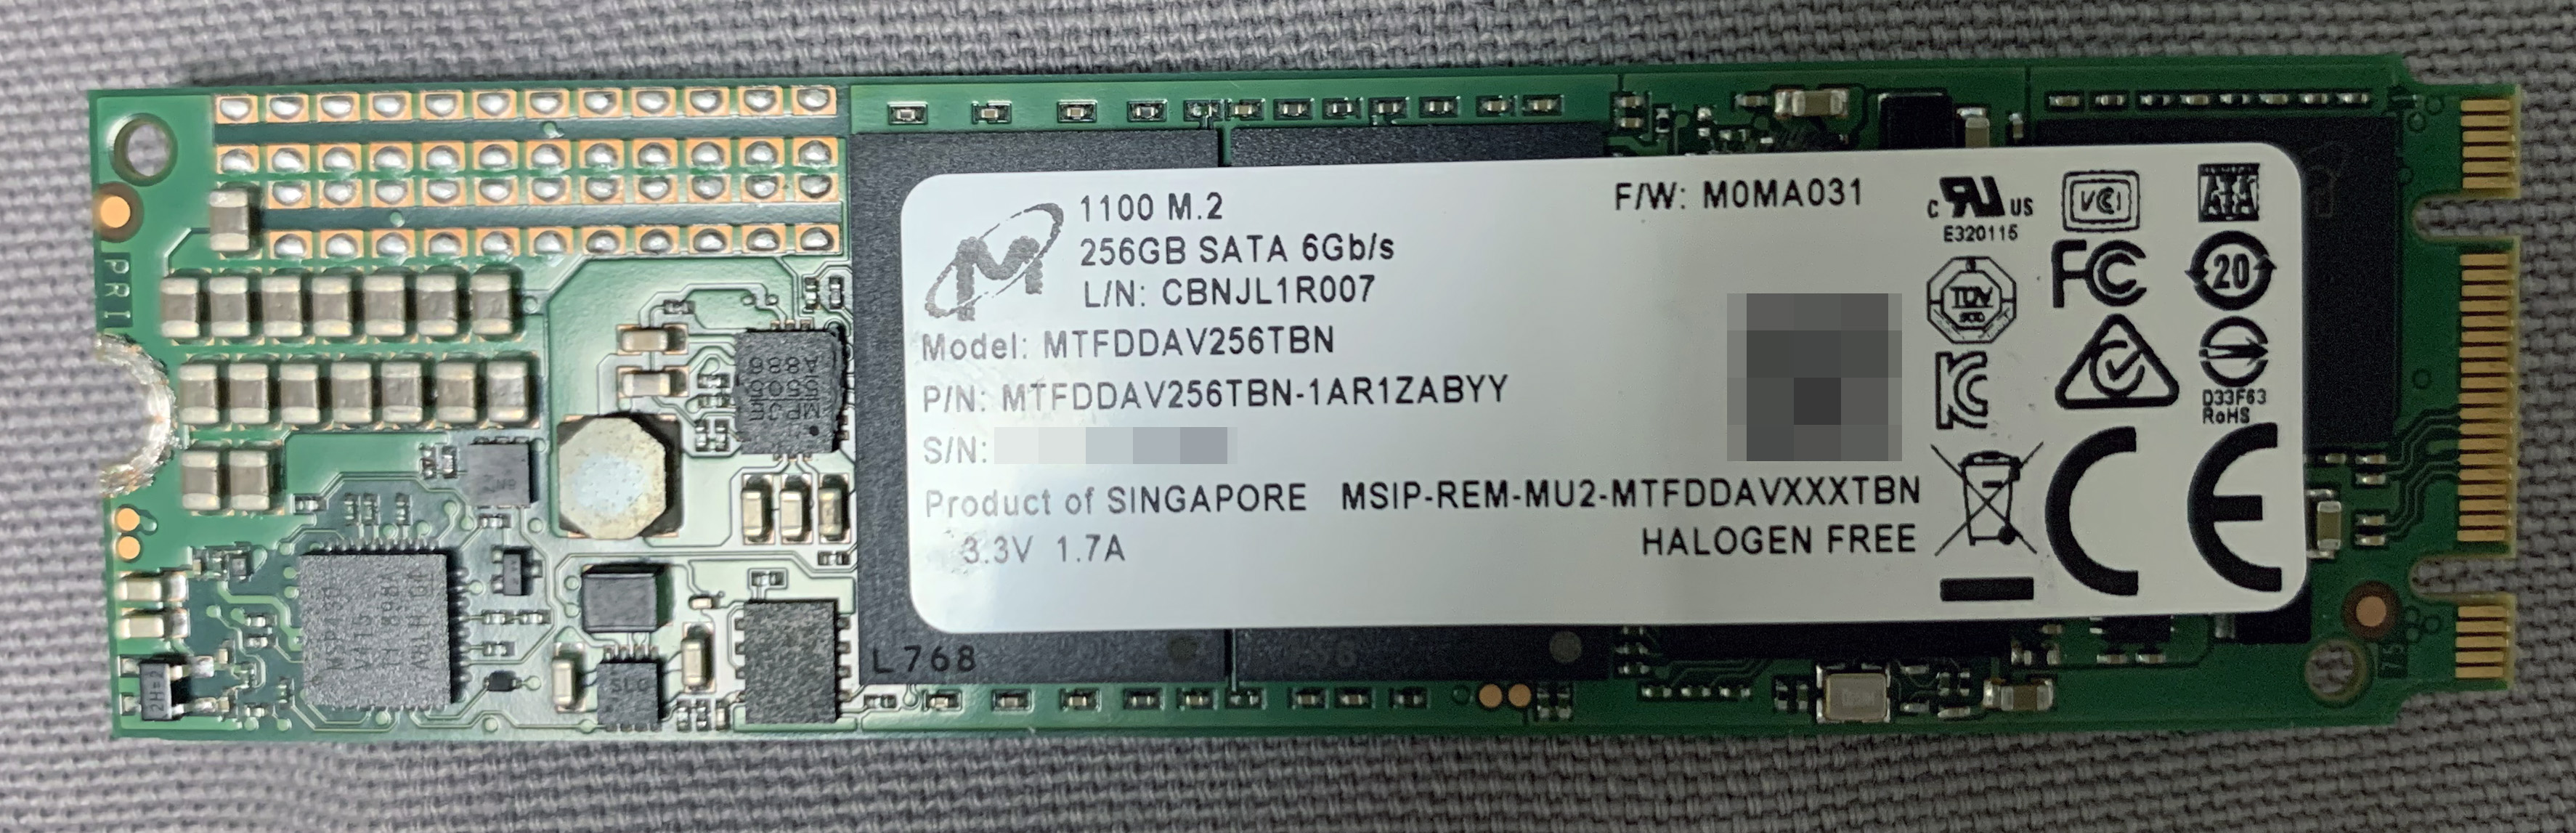 Micron 1100 M.2 256GB (MTFDDAV256TBN-1AR1ZABYY)